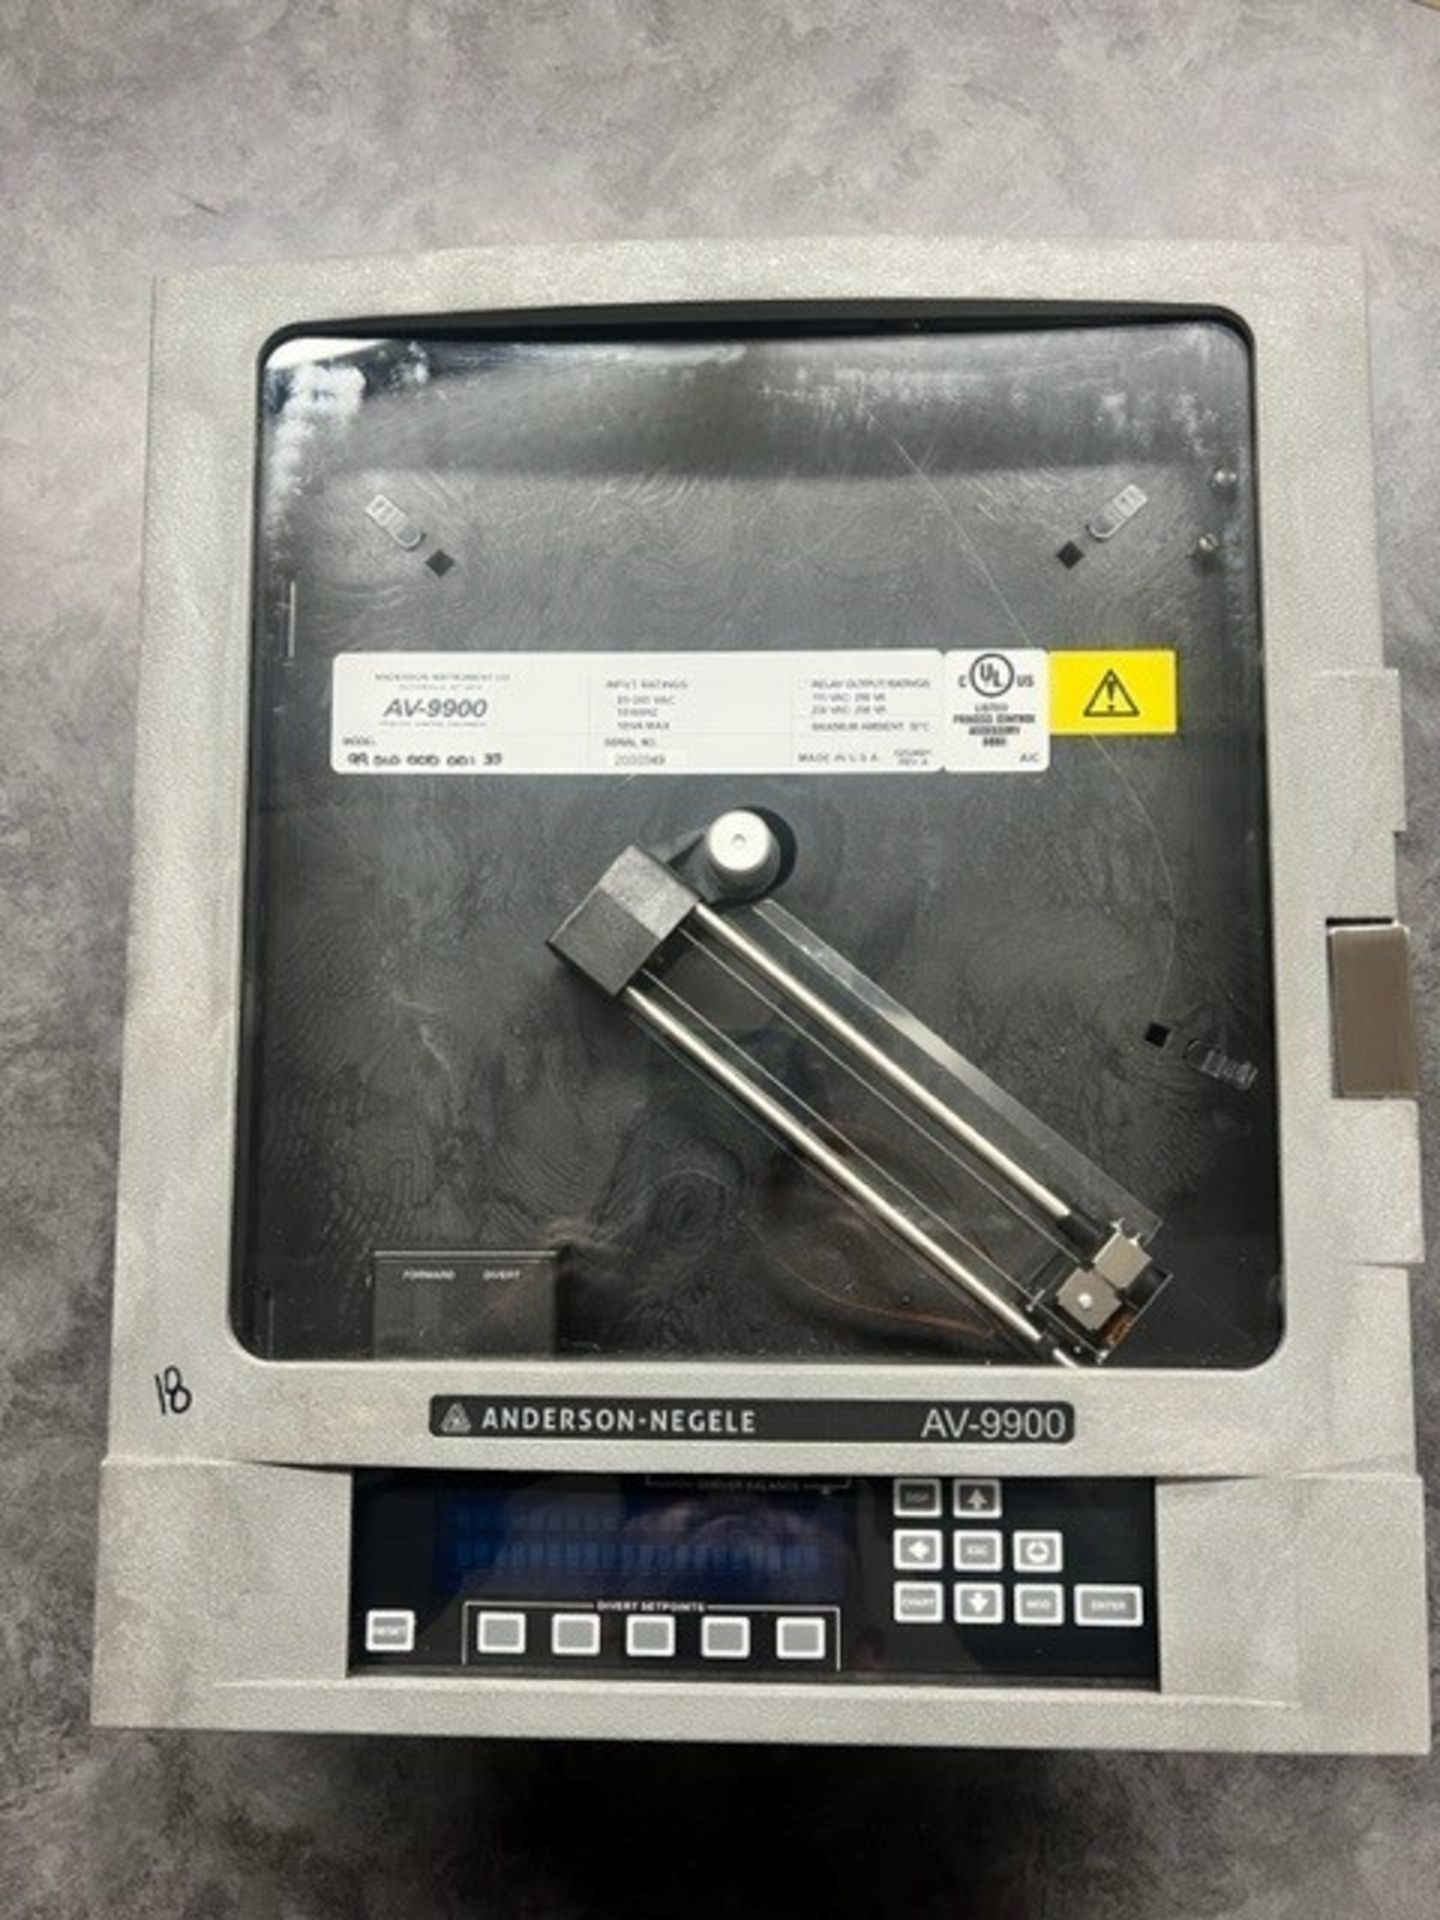 Anderson-Negele AV-9900 Chart Recorder, Model 99010-000-001-33, S/N 2000349 (Load Fee $50) (